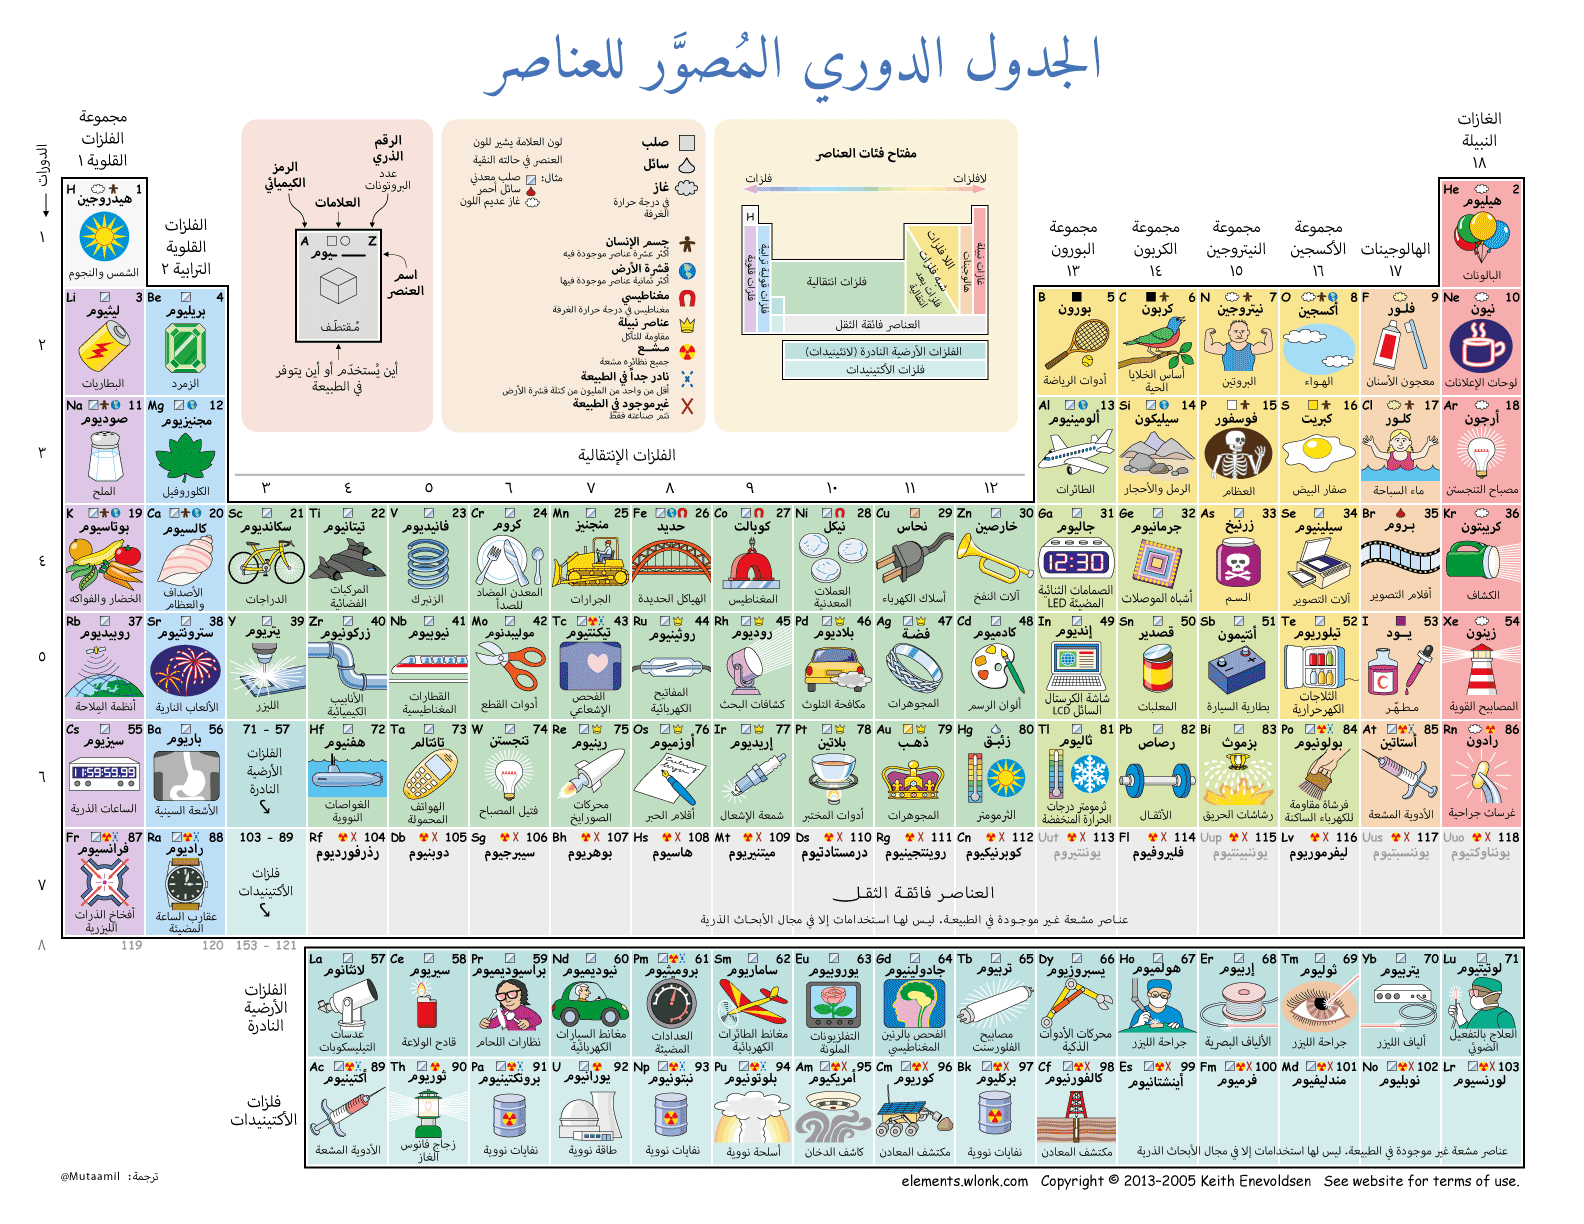 إنفوجرافيك : الجدول الدوري المصوّر للعناصر